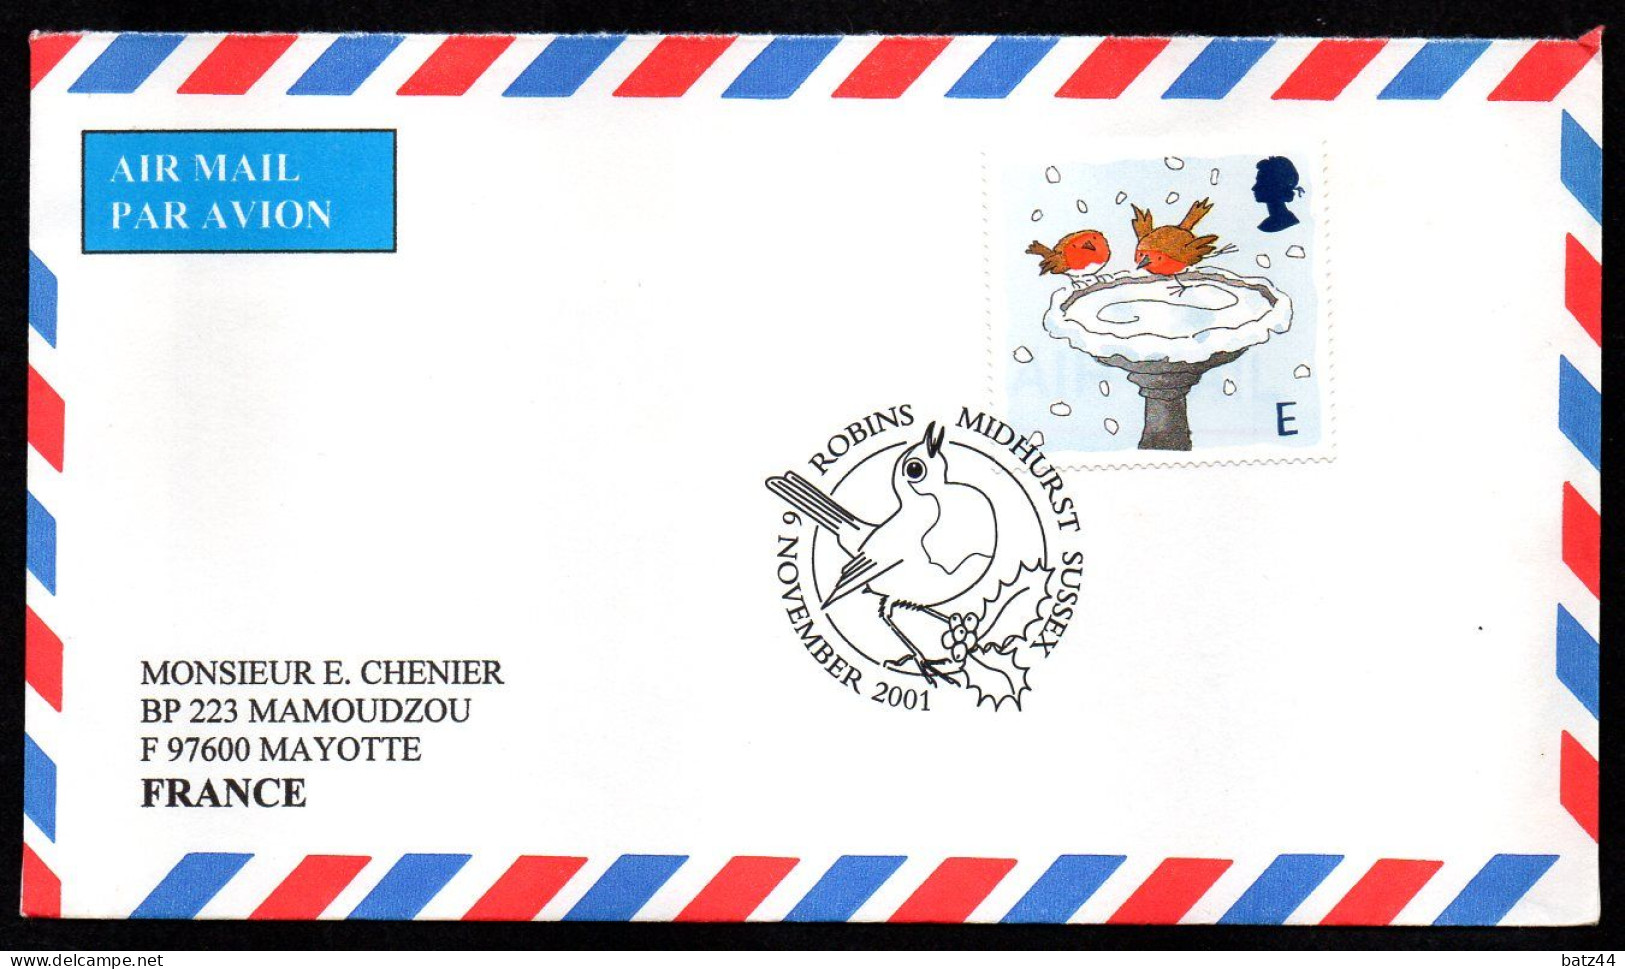 Grande Bretagne 11 enveloppe cover lettre voir scan et descriptions